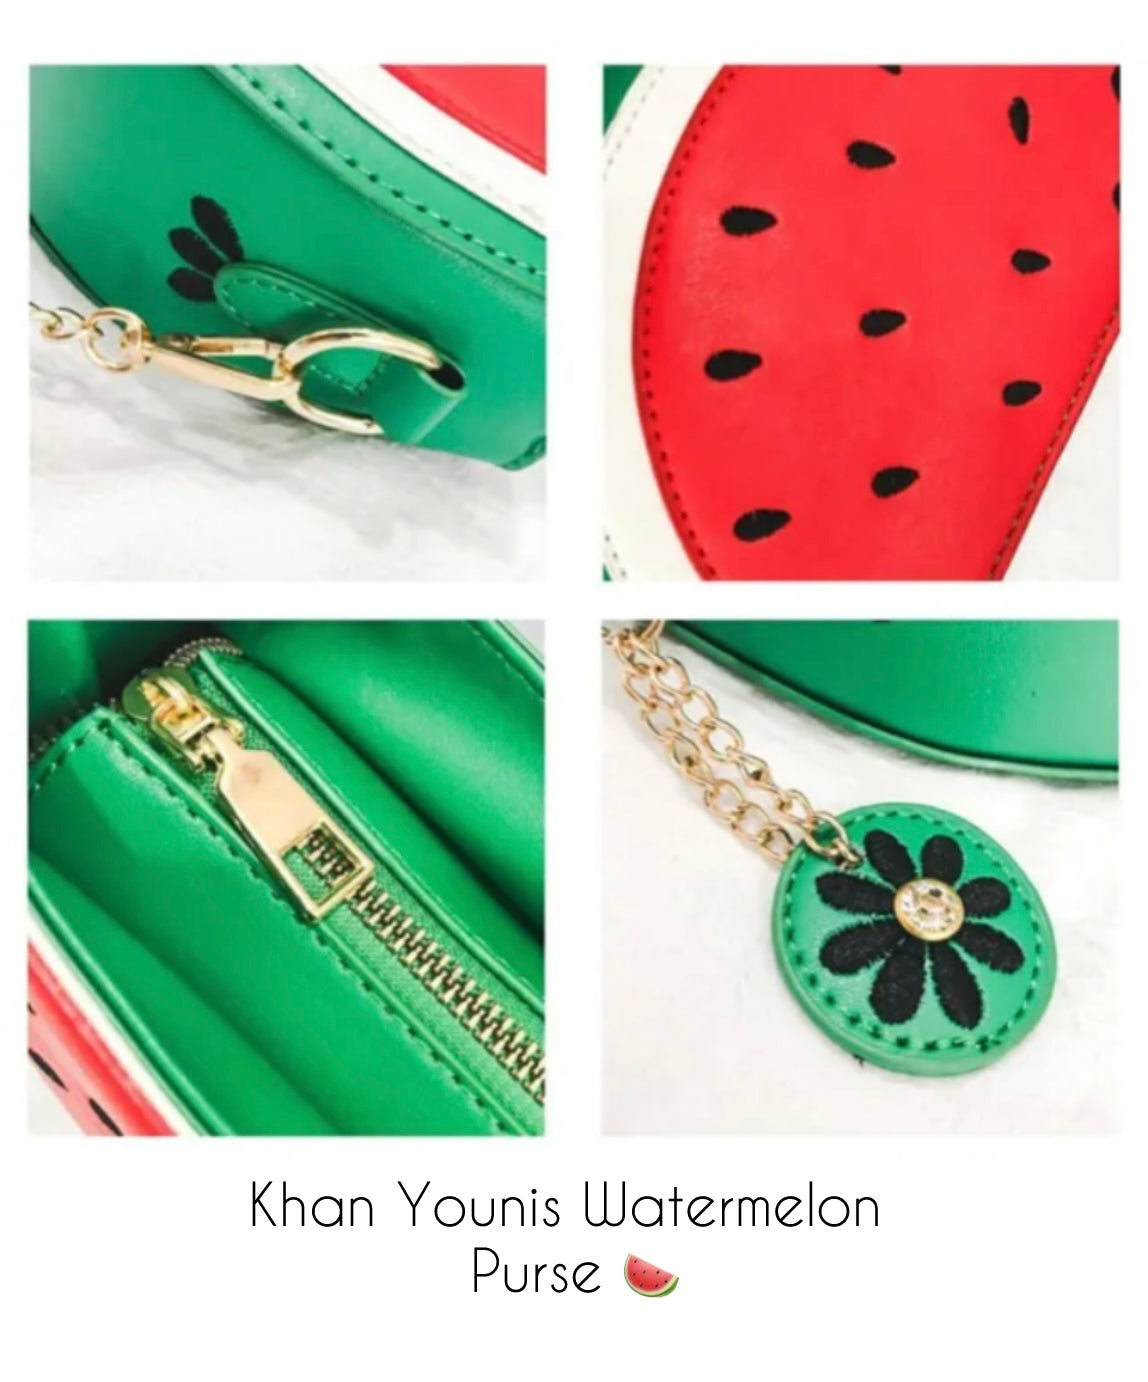 Khan Younis Watermelon Purse